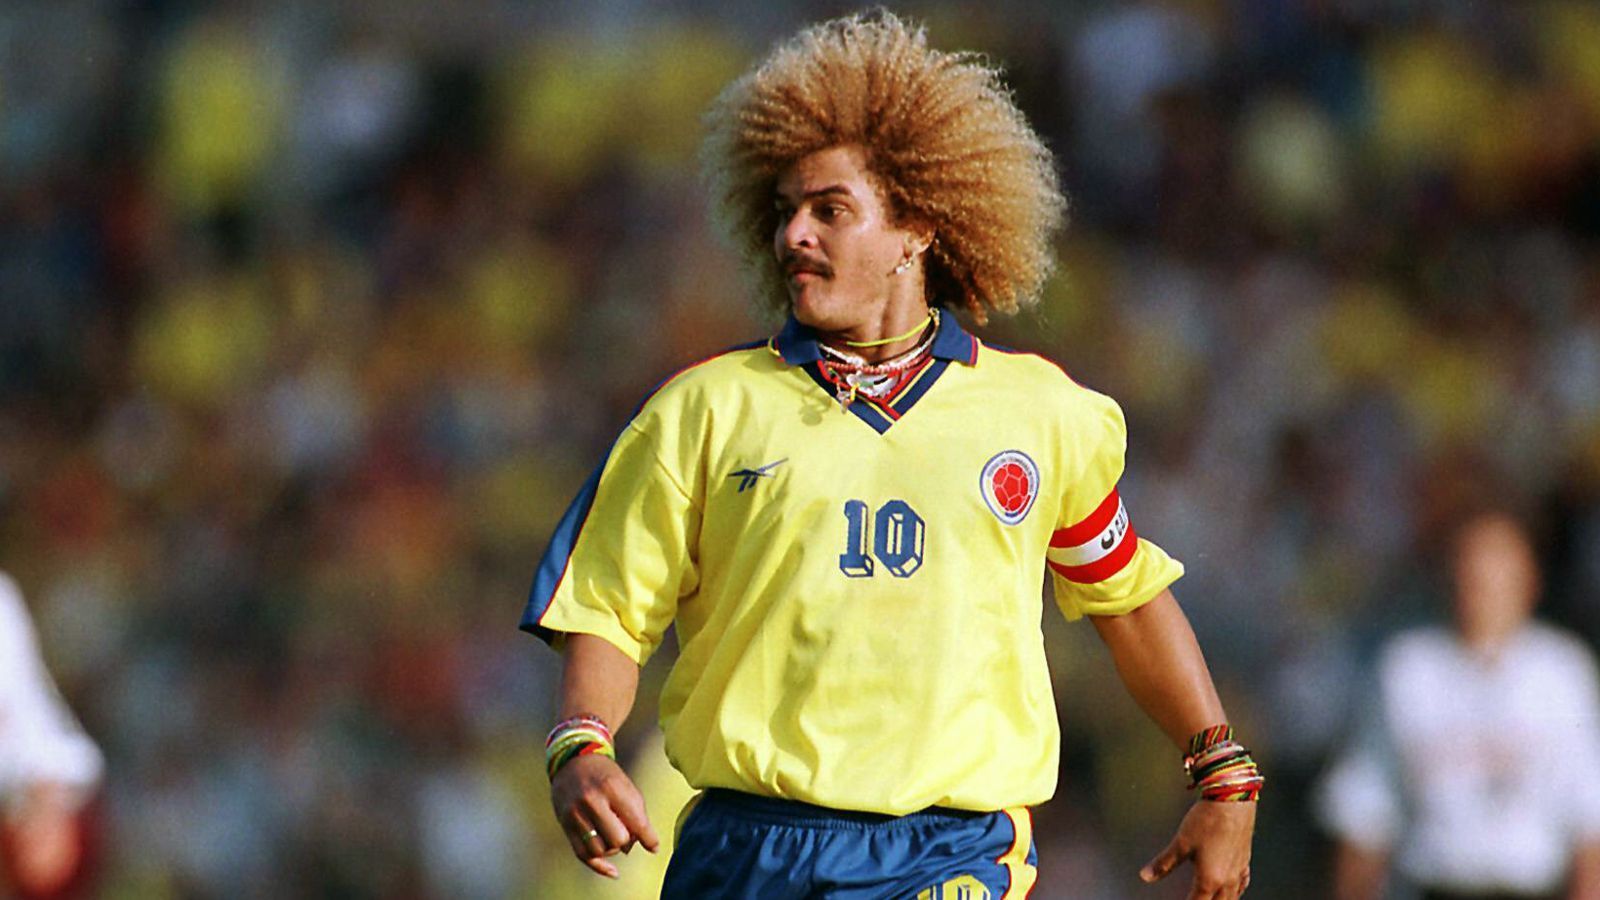 
                <strong>Kolumbien: Carlos Valderrama</strong><br>
                111 LänderspieleDebüt am 27. Oktober 1985 gegen Paraguay (0:3)
              